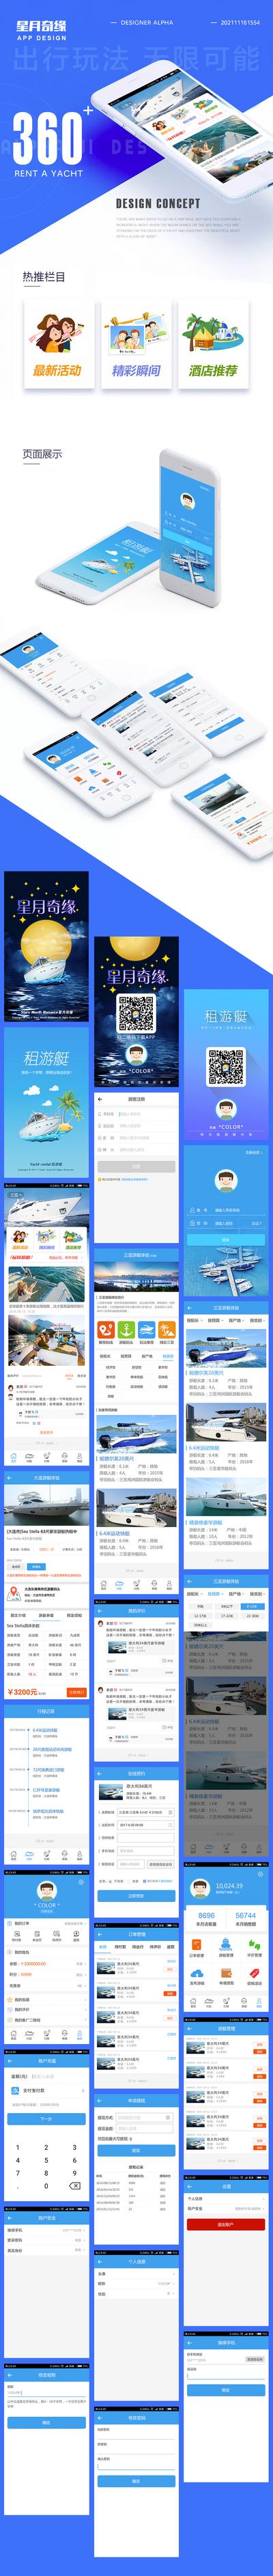 南门网 UI设计 界面设计 APP 小程序 游艇 旅游 租赁 攻略 度假 周边游 海